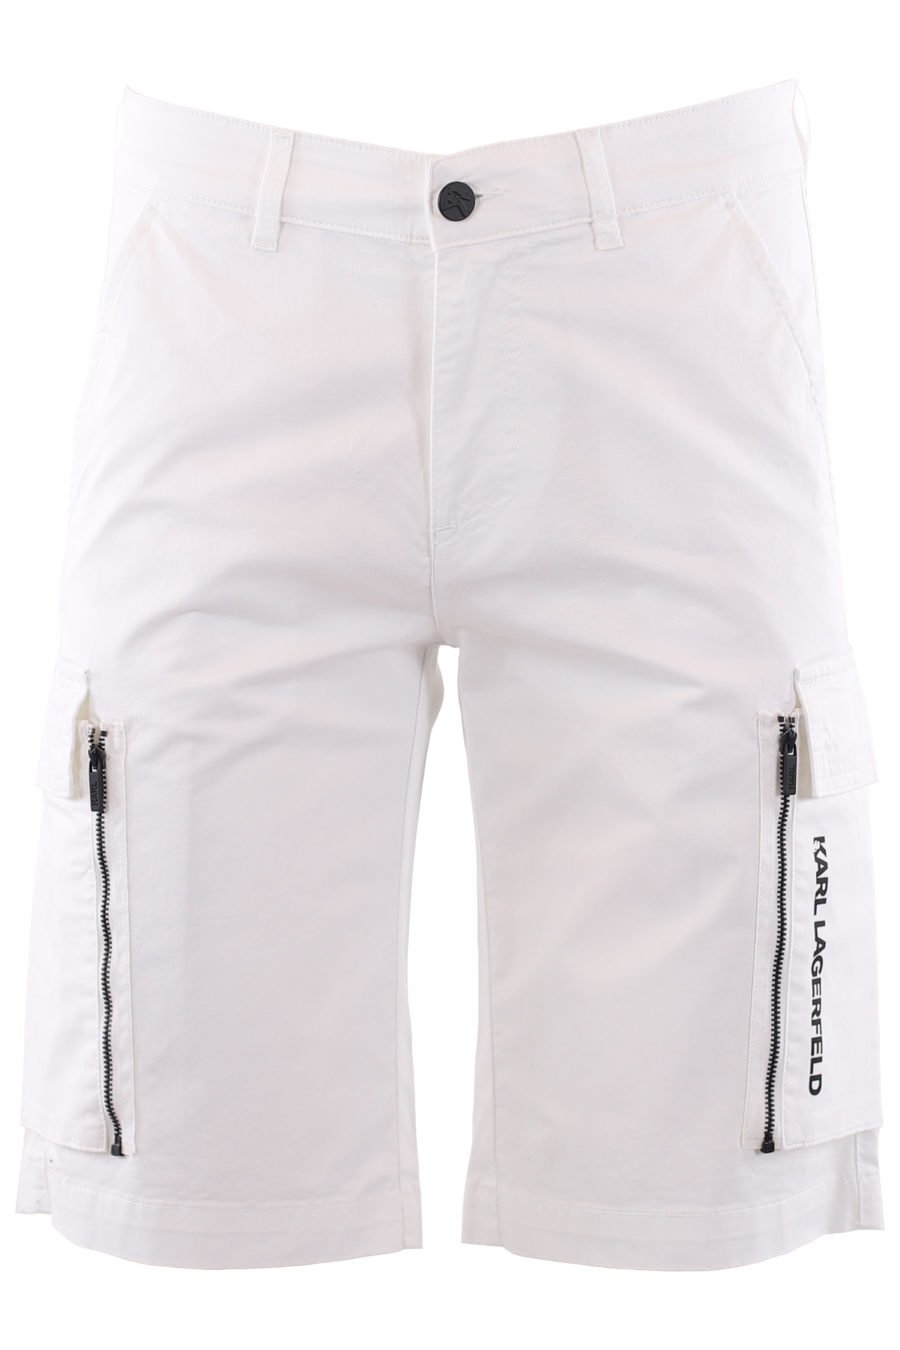 Pantalón corto blanco cargo - IMG 6630